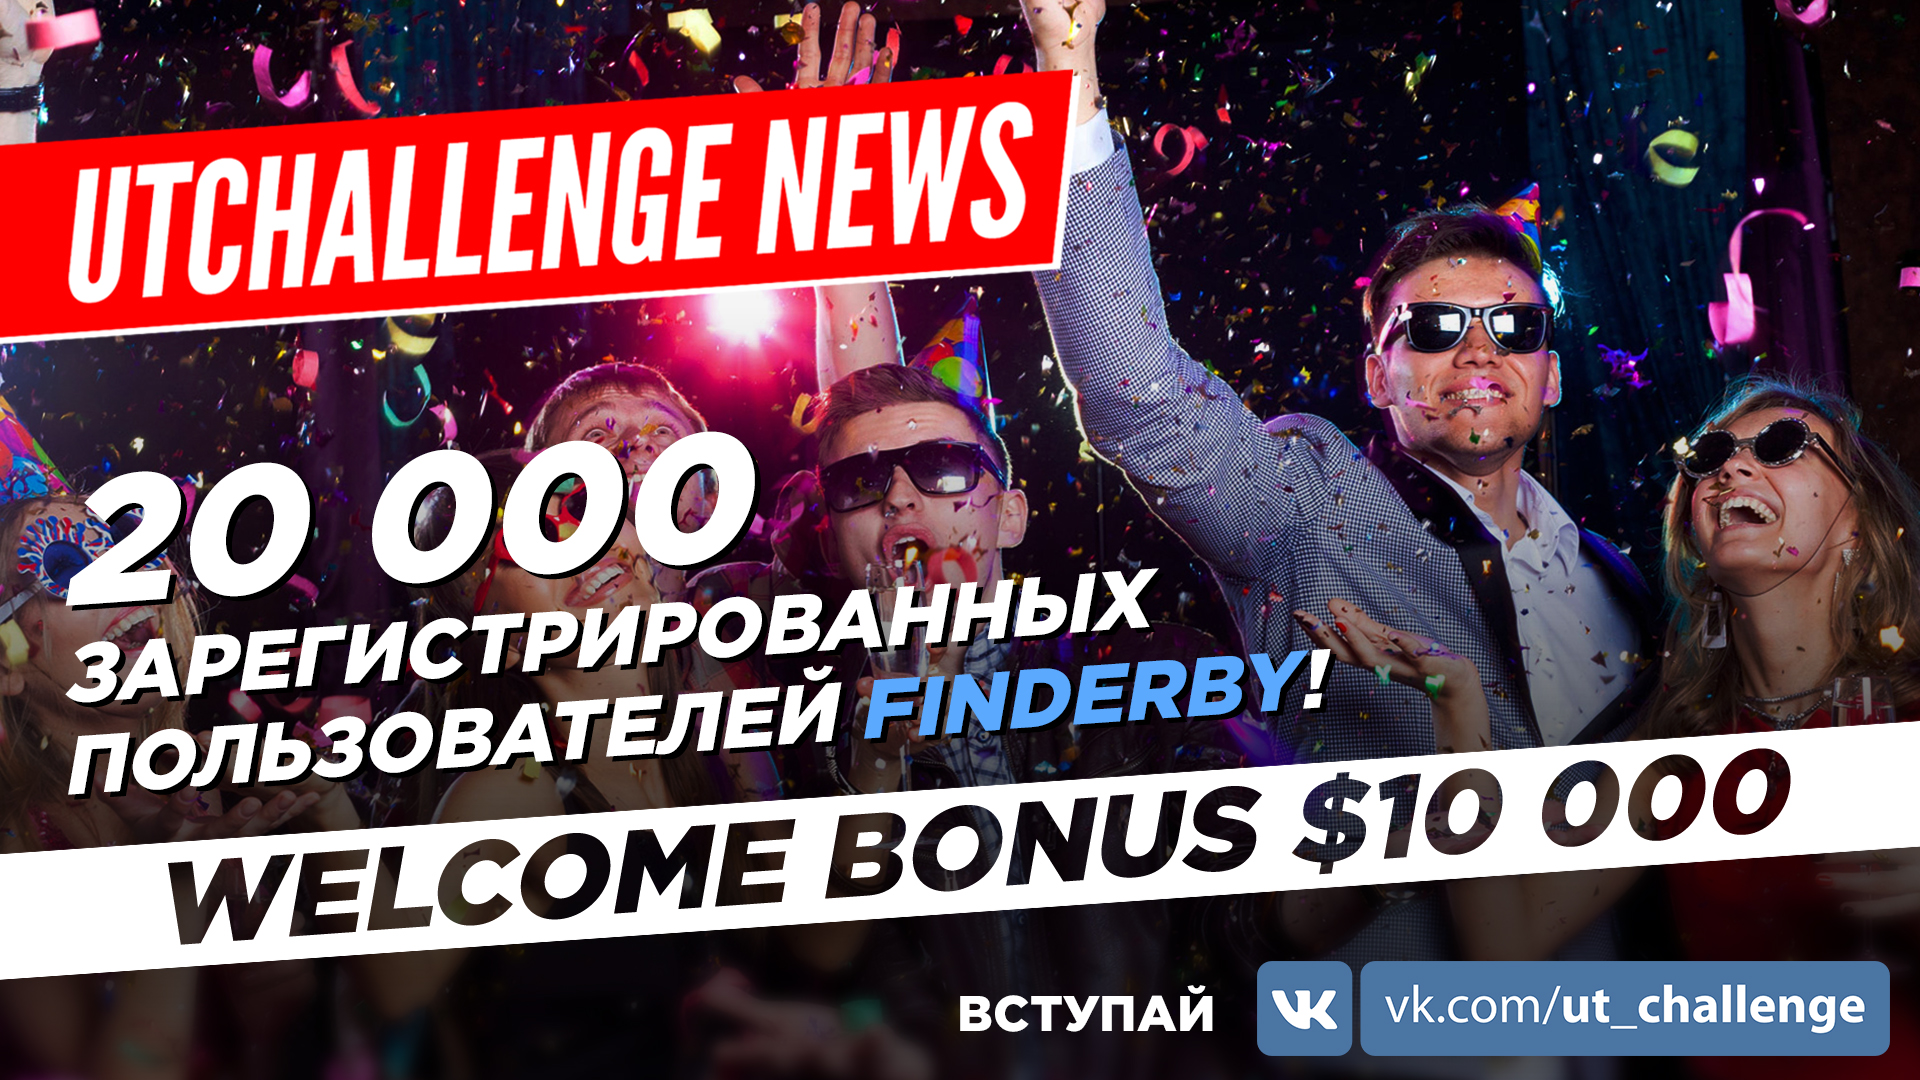 UTChallenge NEWS — 20 000 пользователей FinDerby + $10 000 Welcome Bonus + Изменение в платежах